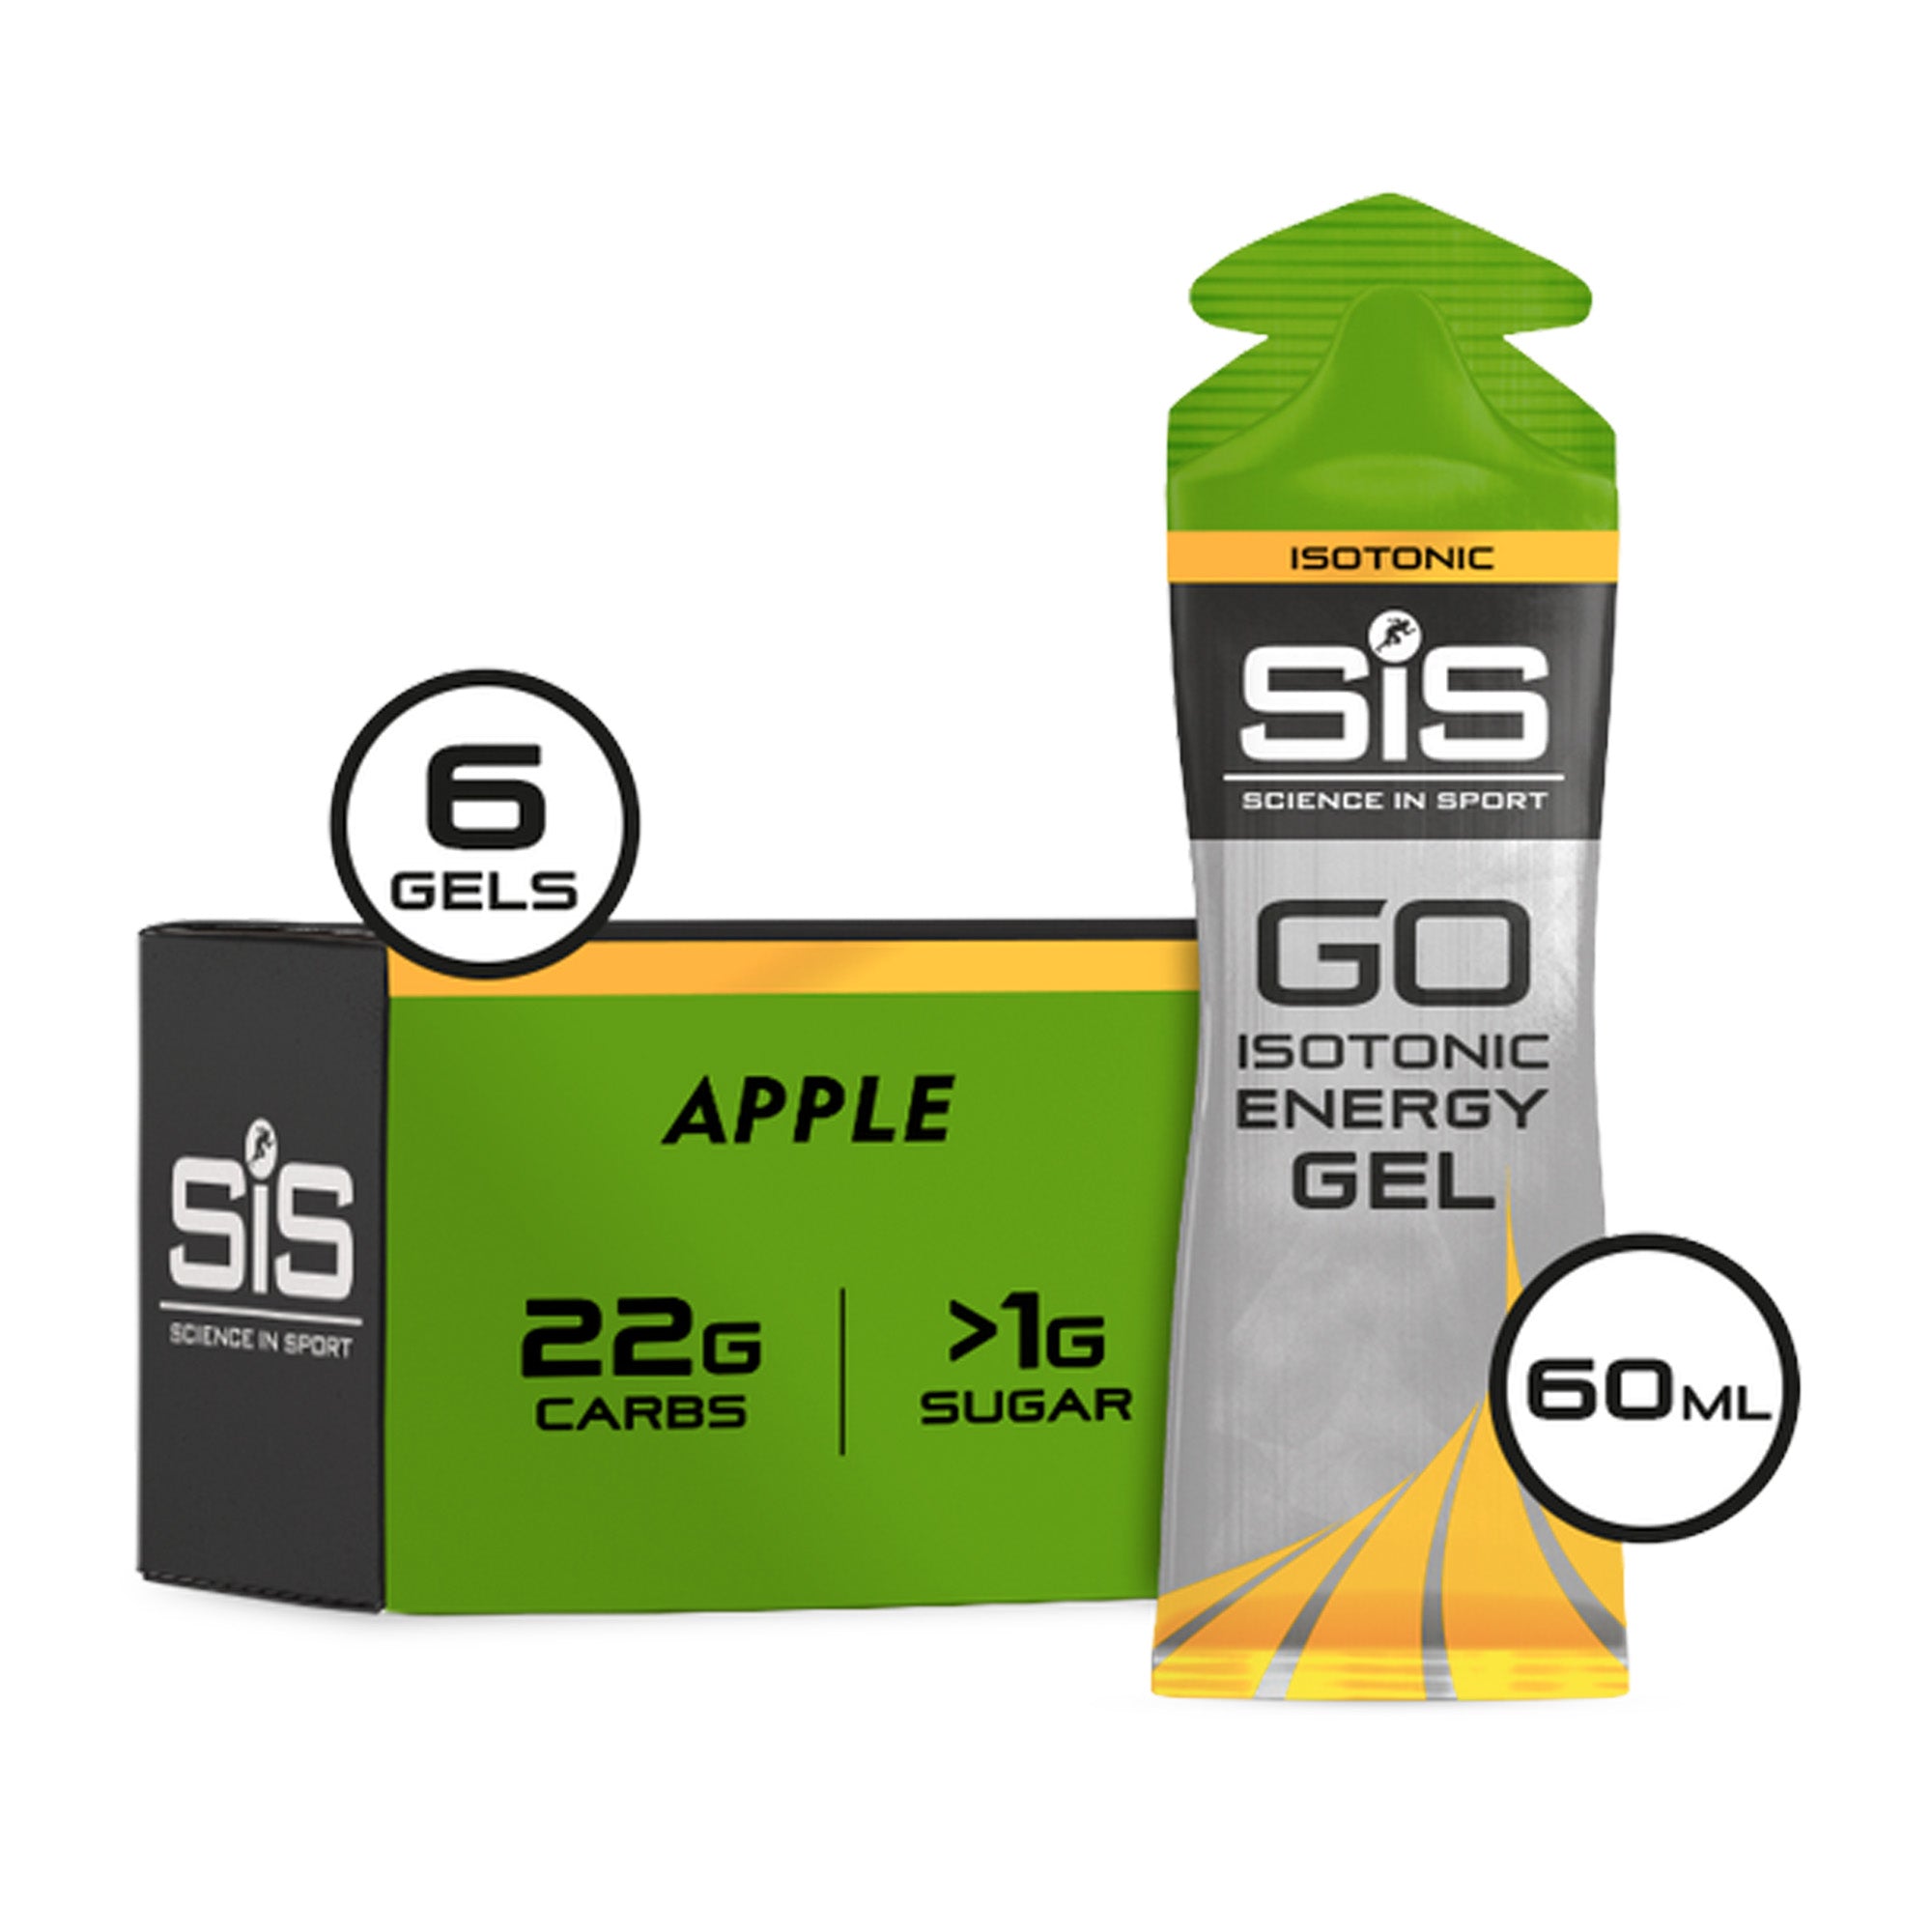 SIS go energy gel actie verpakking 6 stuks